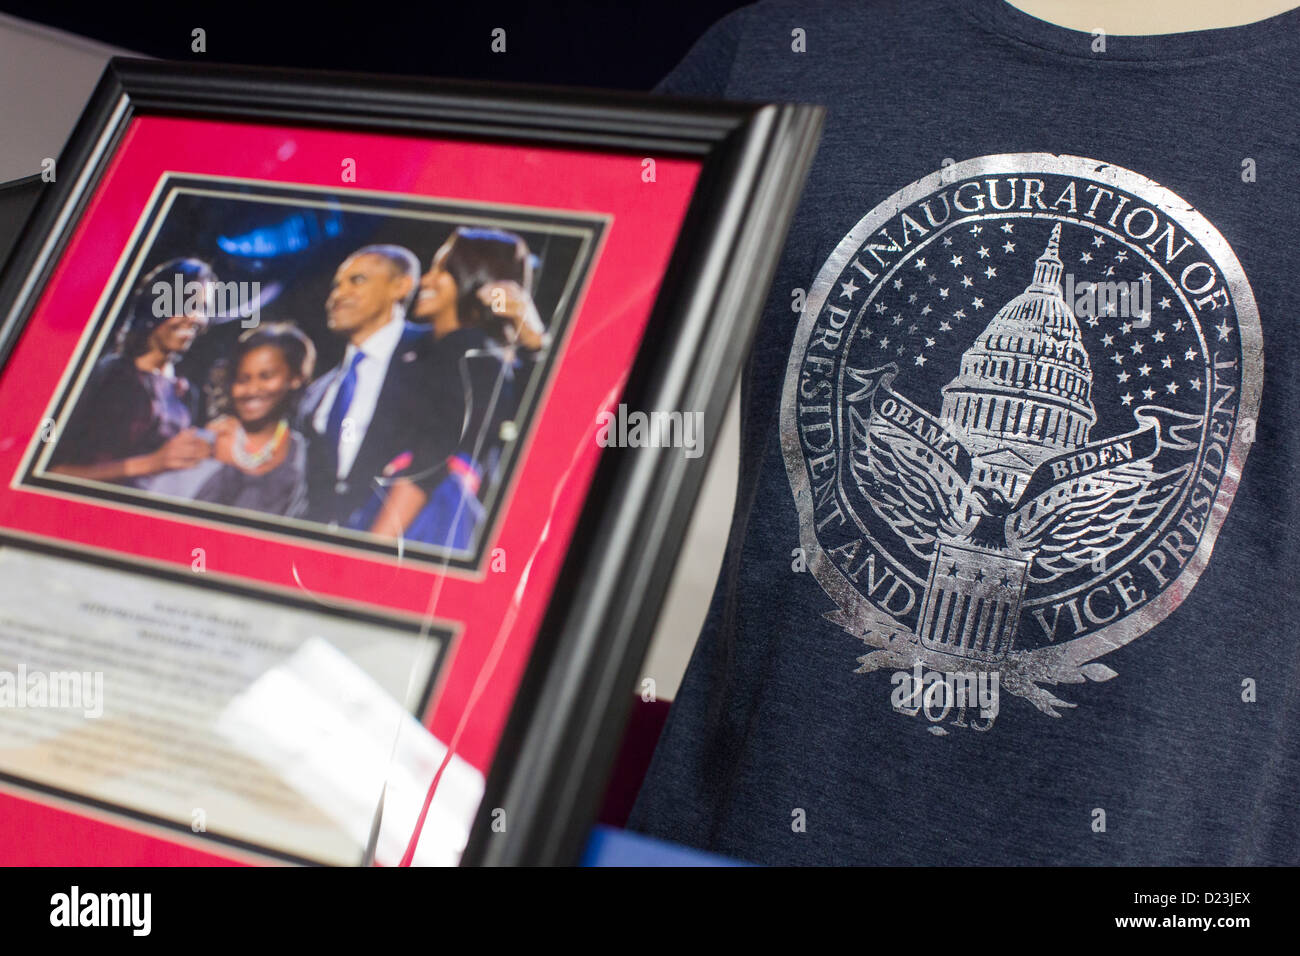 Offizielle merchandise für die 2013 Amtseinführung von Präsident Barack Obama und Vize-Präsident Joe Biden. Stockfoto